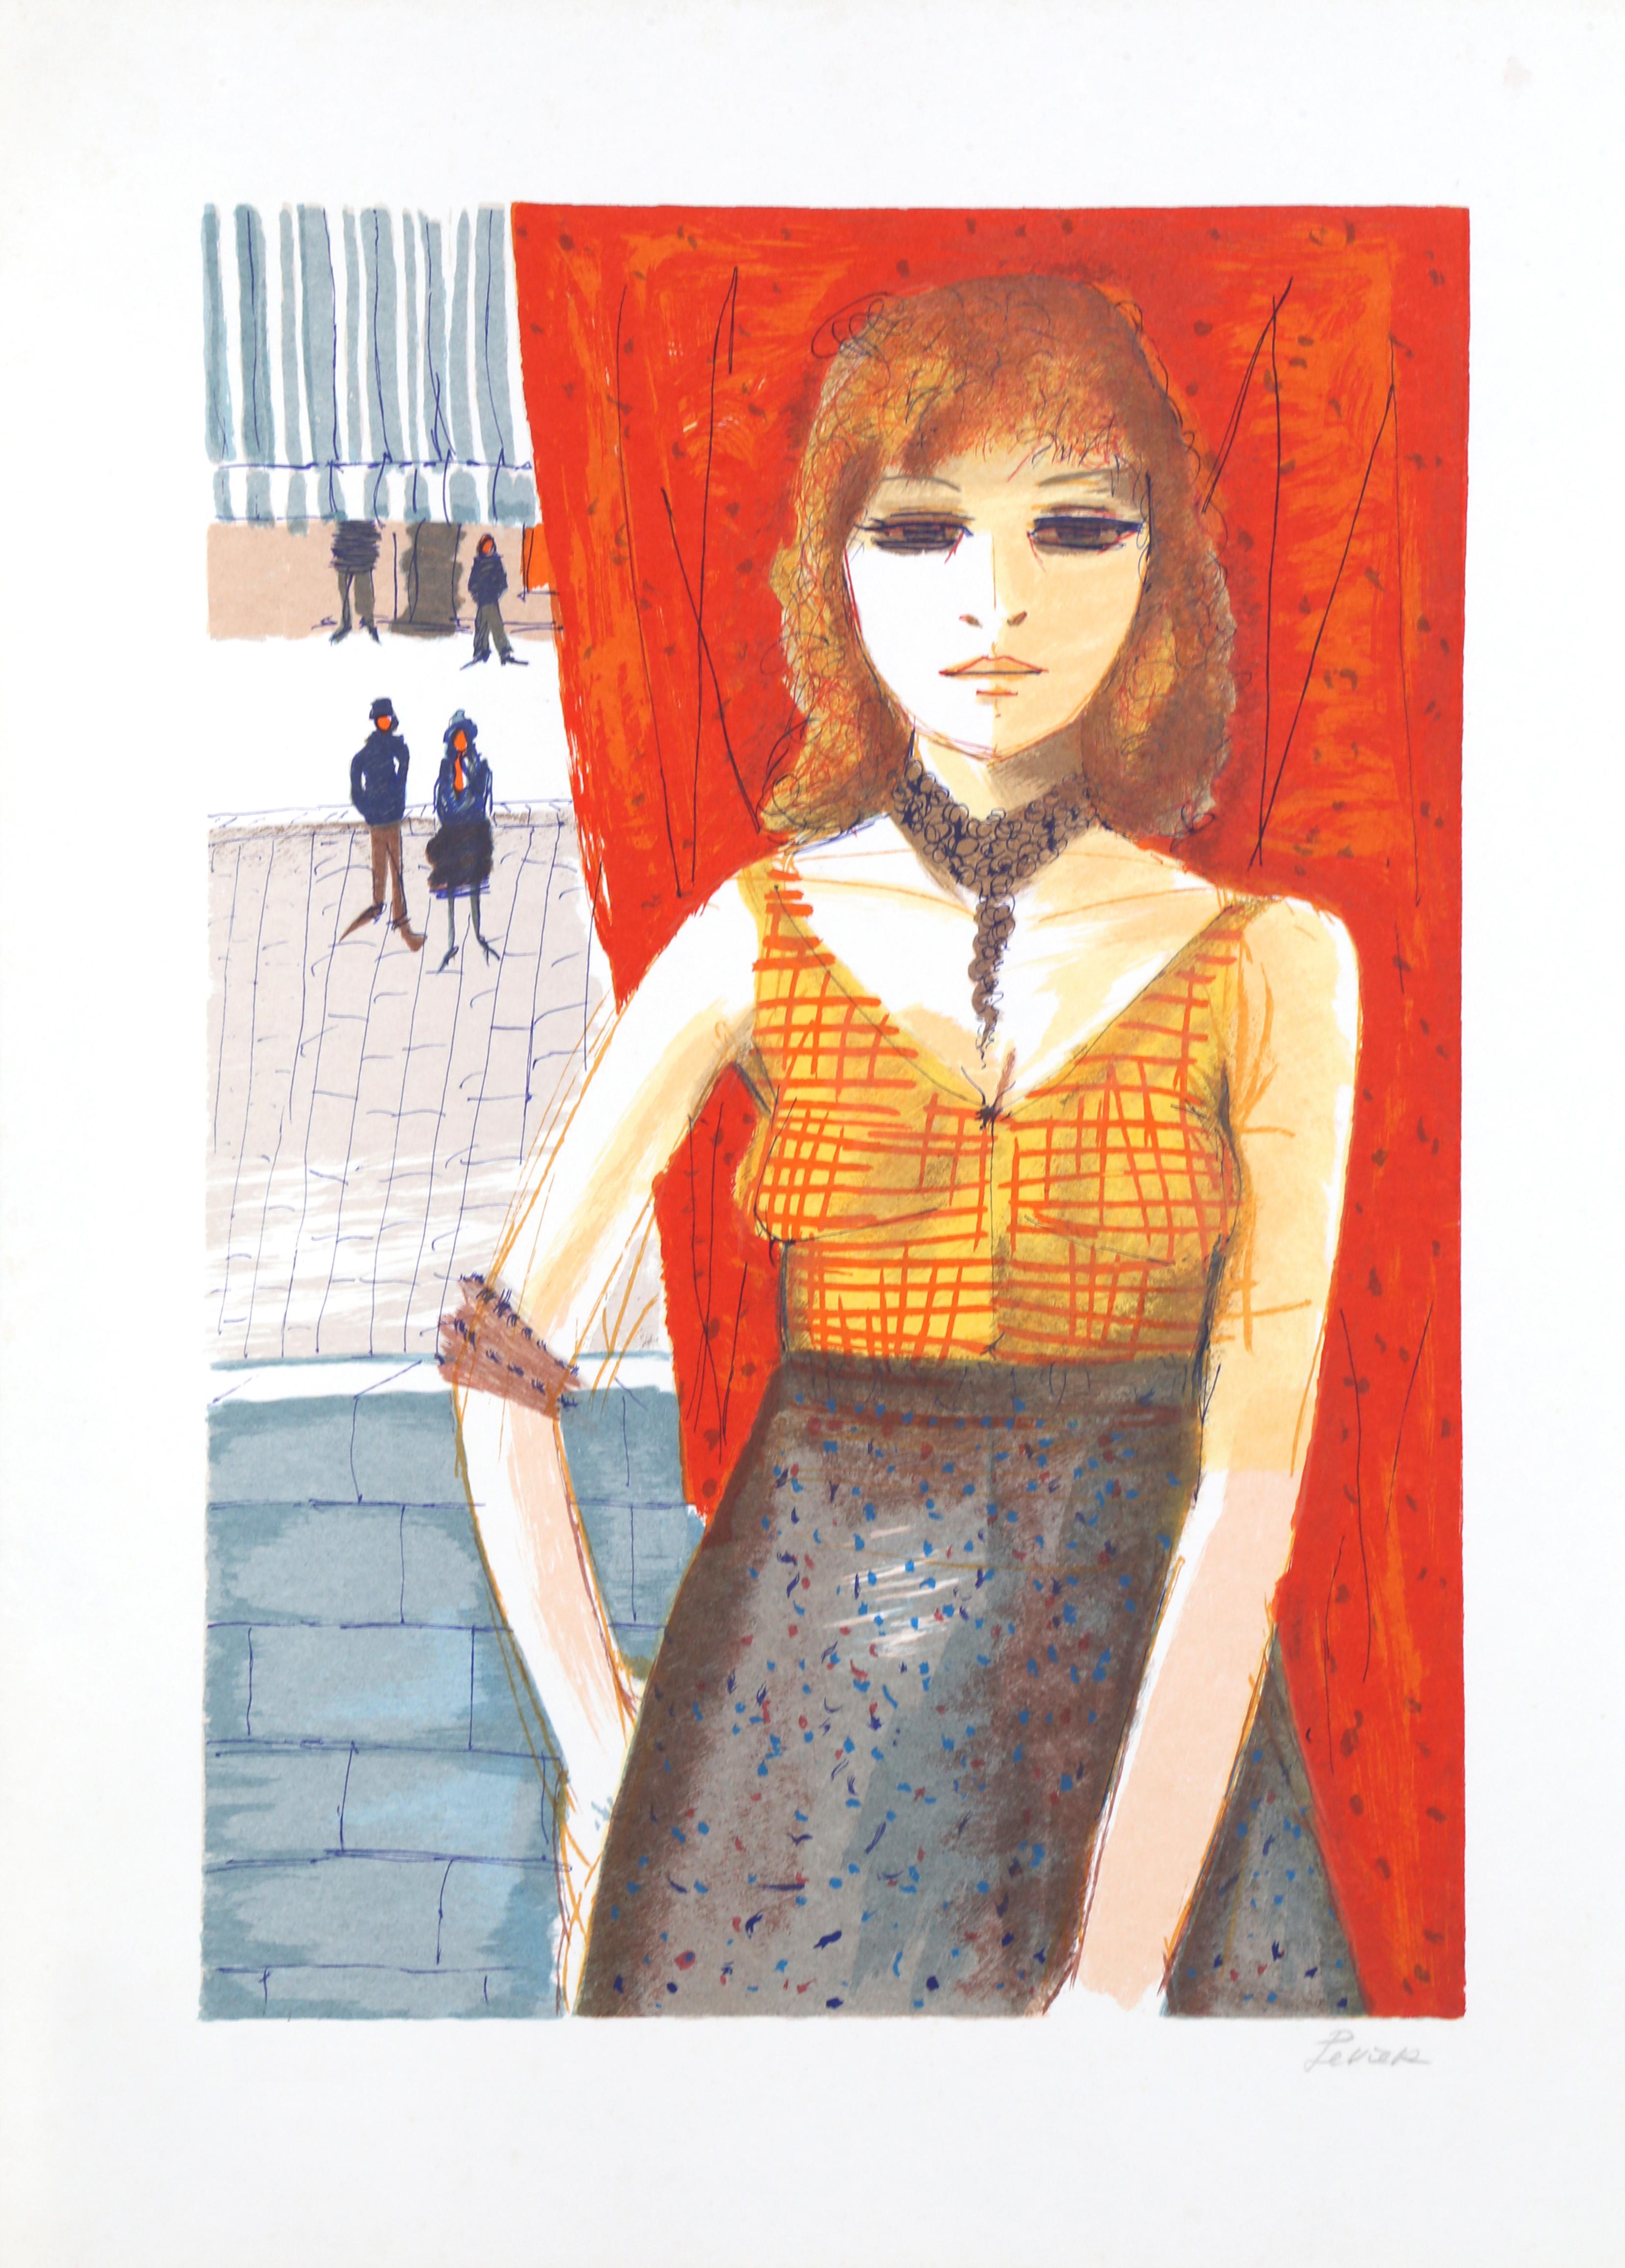 Tête rouge
Charles Levier, Français (1920-2003)
Date : vers 1970
Lithographie, signée et numérotée au crayon
Edition de 250
Taille de l'image : 24 x 16 pouces
Taille : 30 x 22 in. (76,2 x 55,88 cm)